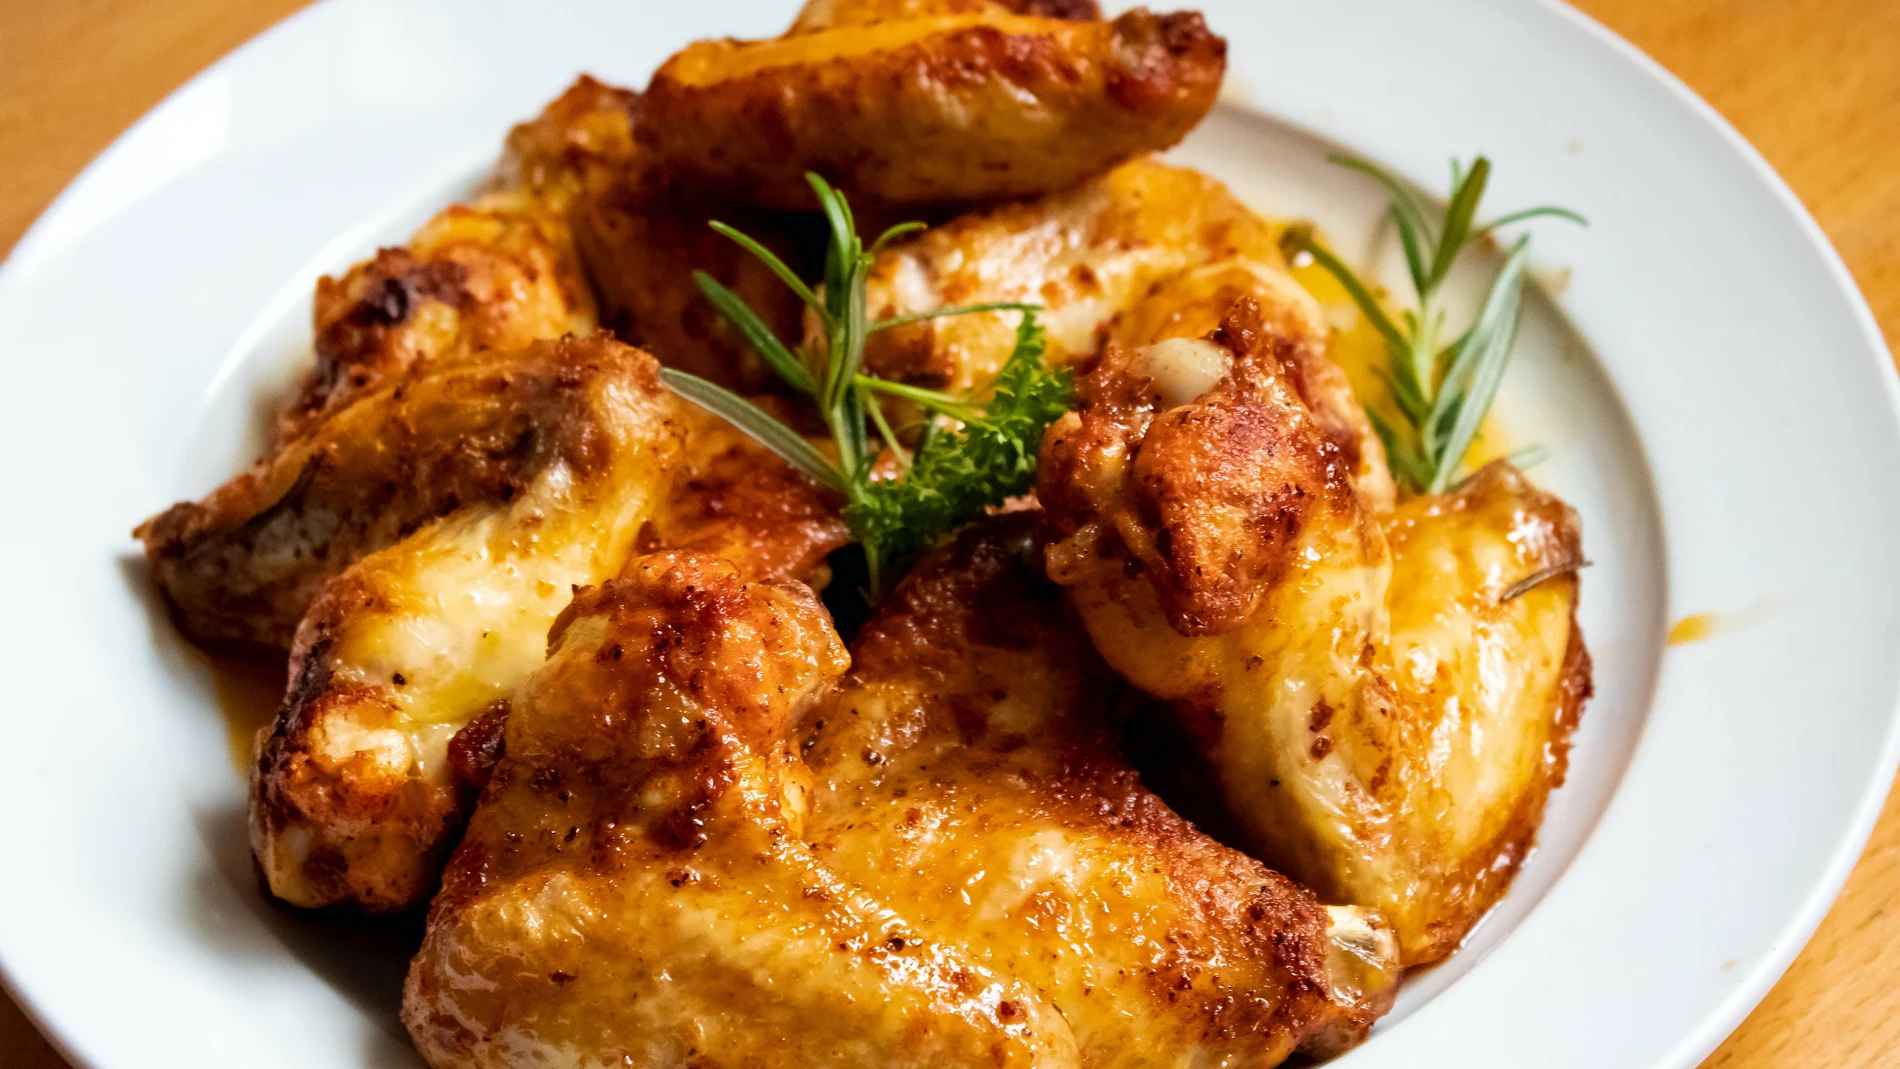 Nueva alerta sanitaria: retiran varios lotes de alitas de pollo congeladas y piden evitar su consumo